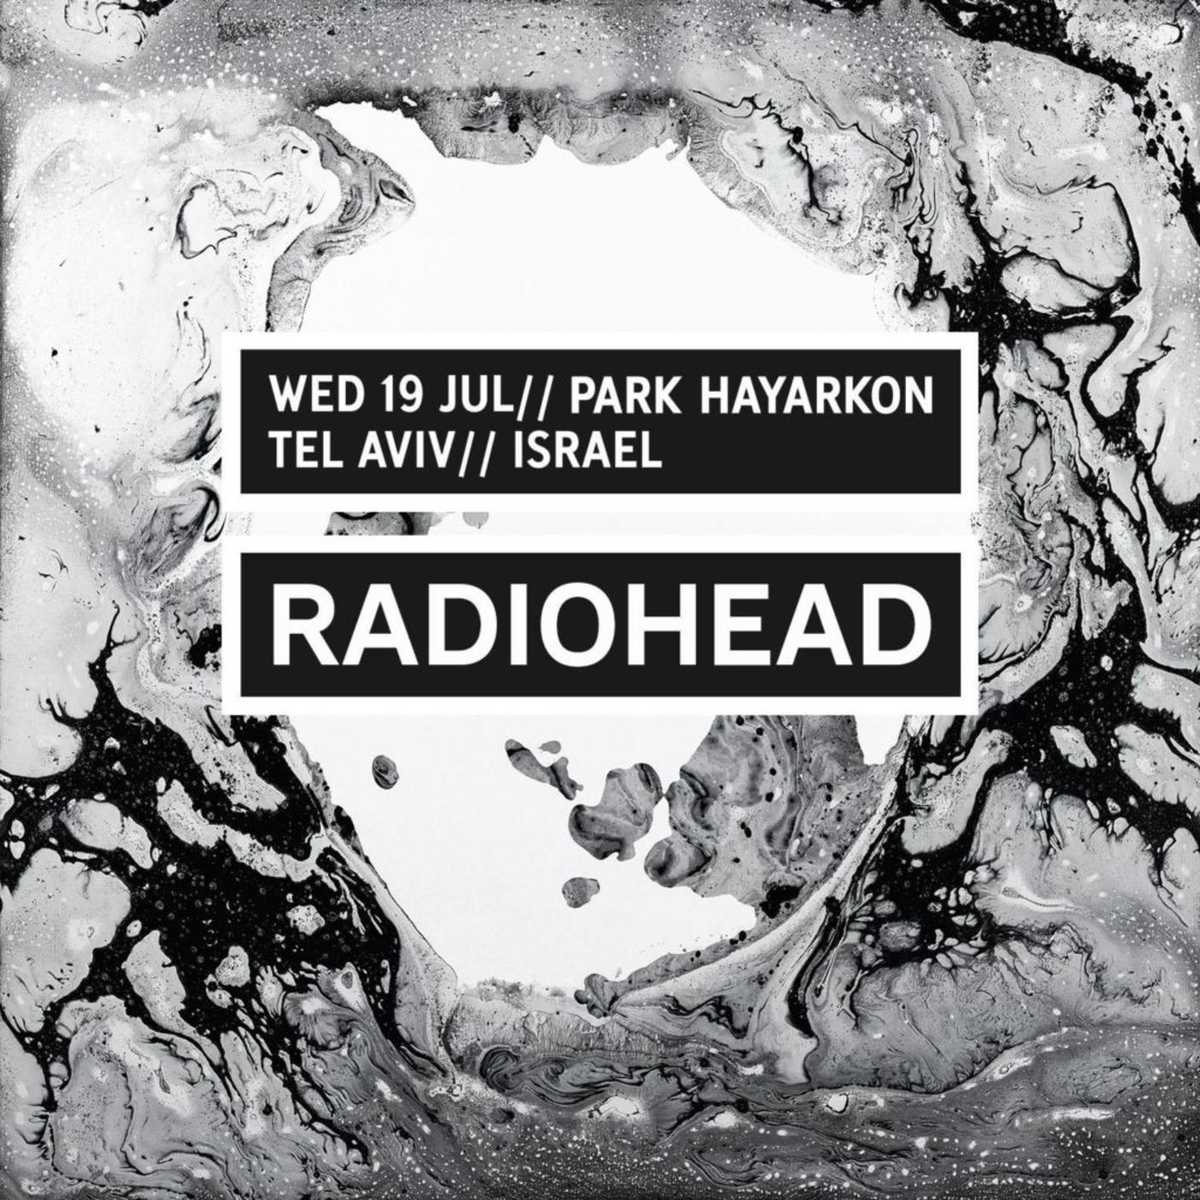 Έχουν δίκιο οι Radiohead που θα κάνουν συναυλία στο Ισραήλ;